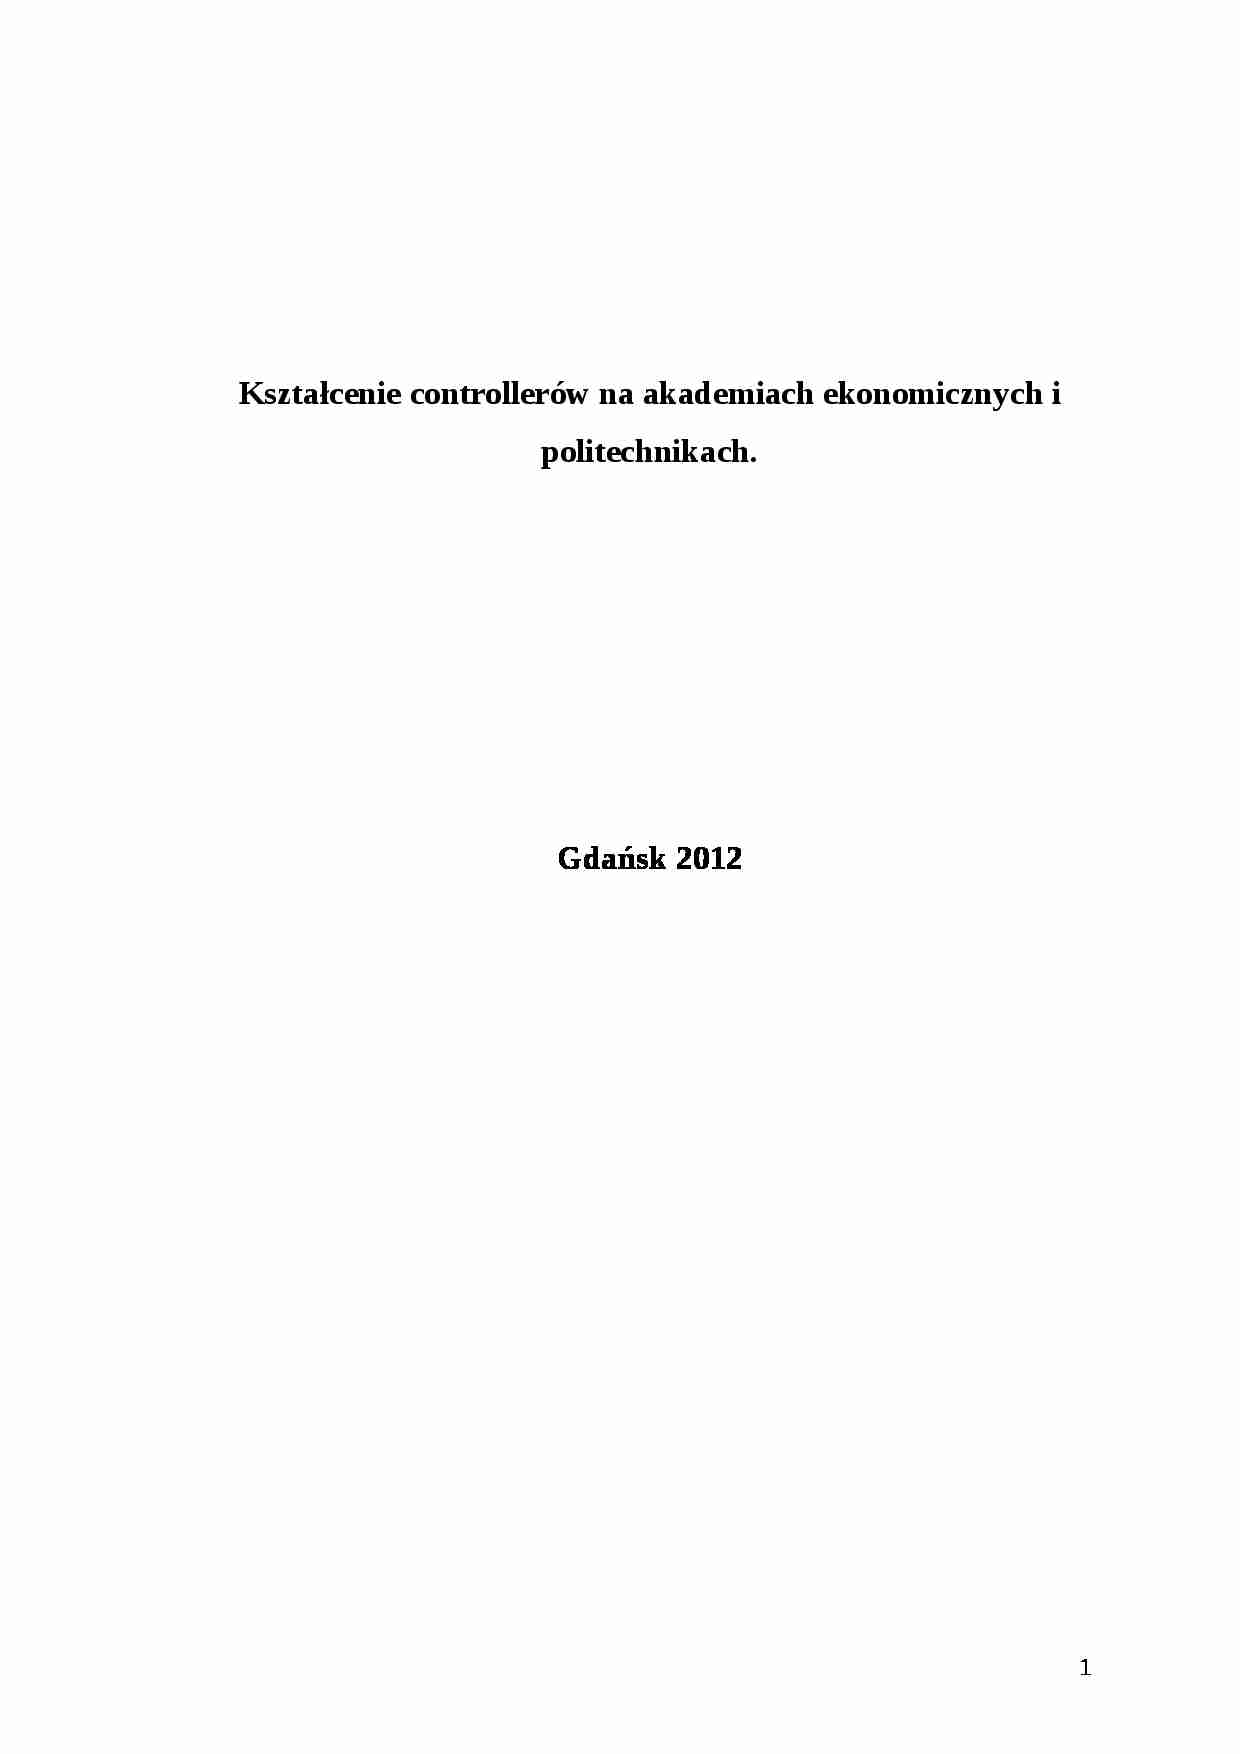 Kształcenie controllerów na akademiach ekonomicznych i politechnikach. - strona 1